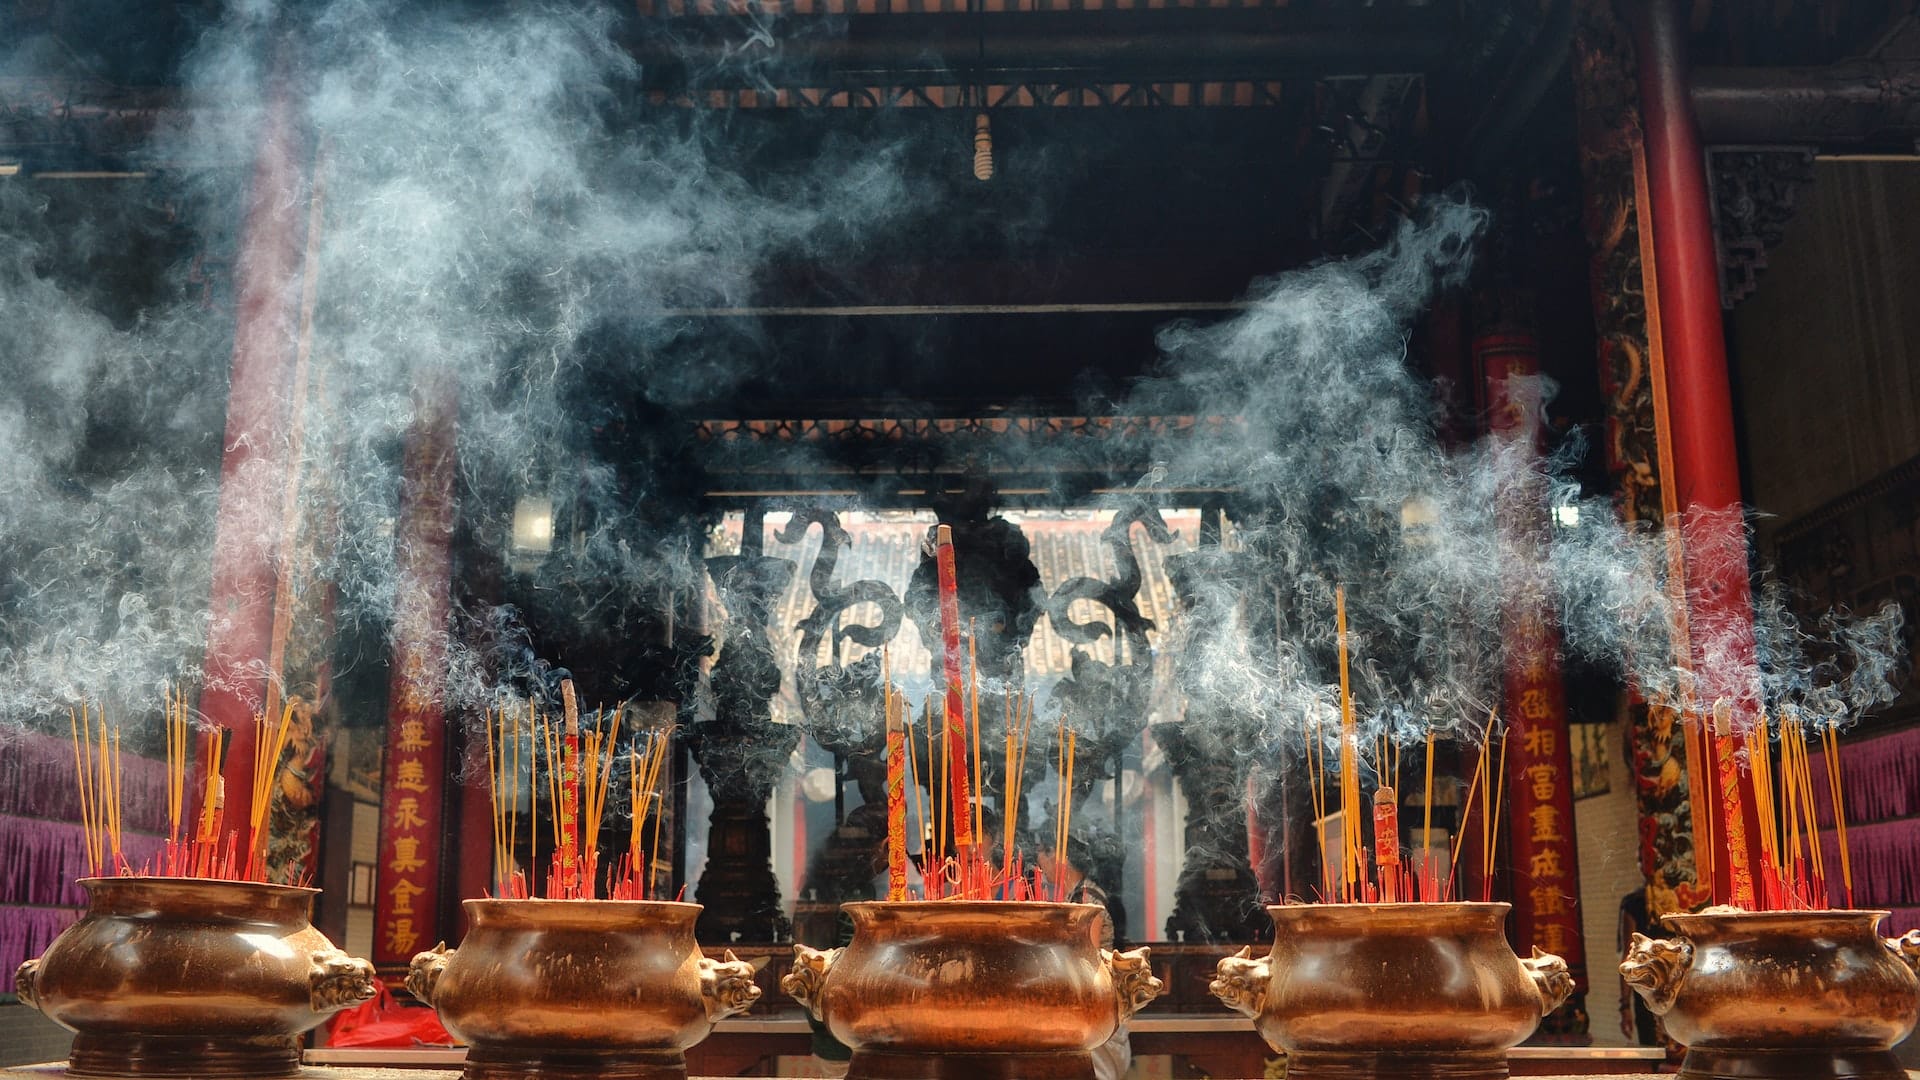 Heiliger Rauch & Rauchsymbolik in verschiedenen Traditionen